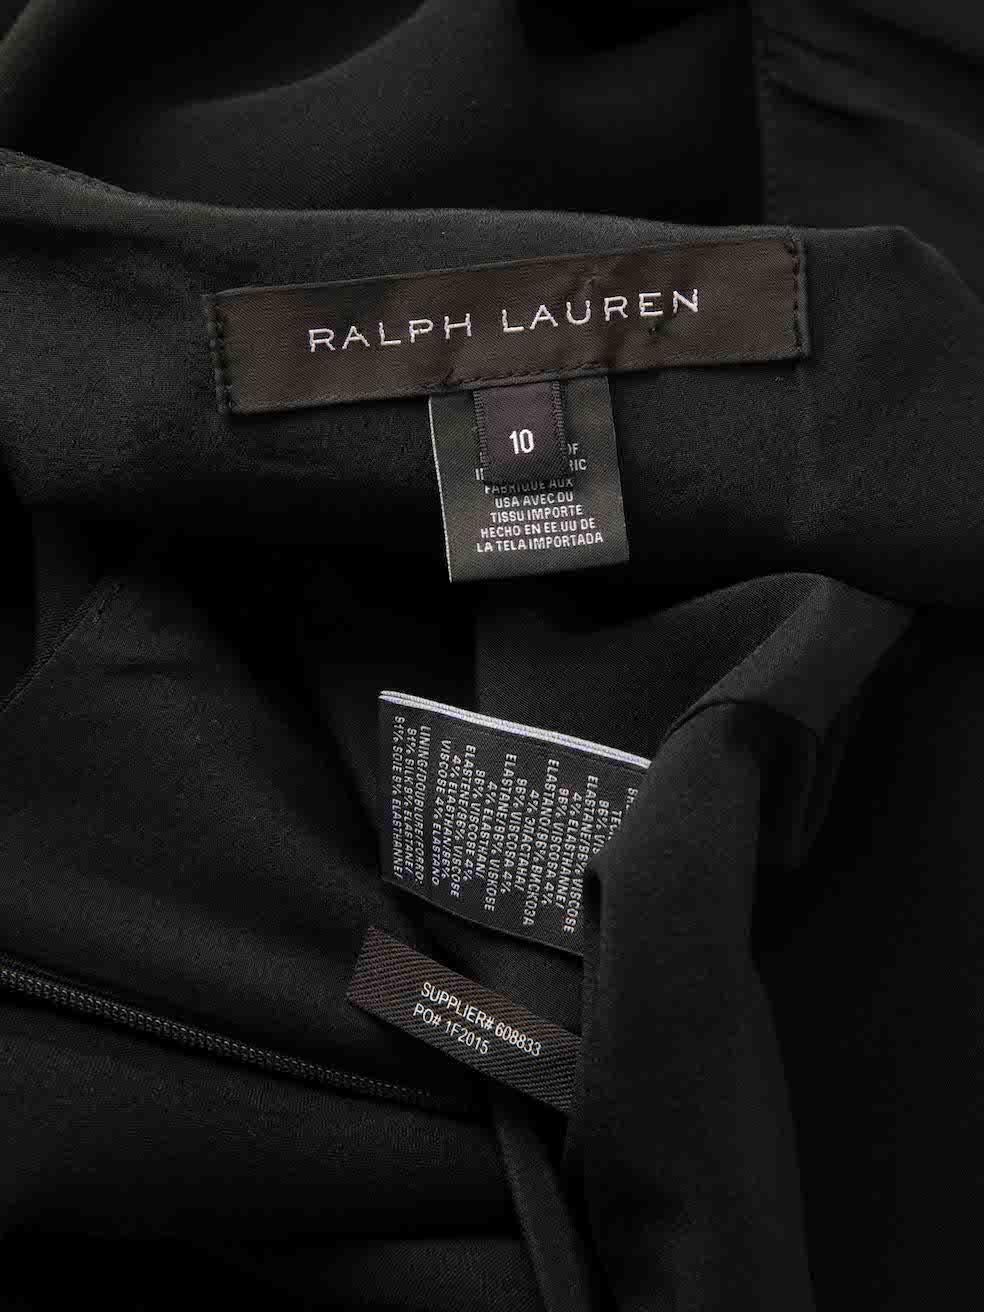 Ralph Lauren Ralph Lauren Black Label Black Cape Detail Shift Dress Size XL For Sale 1